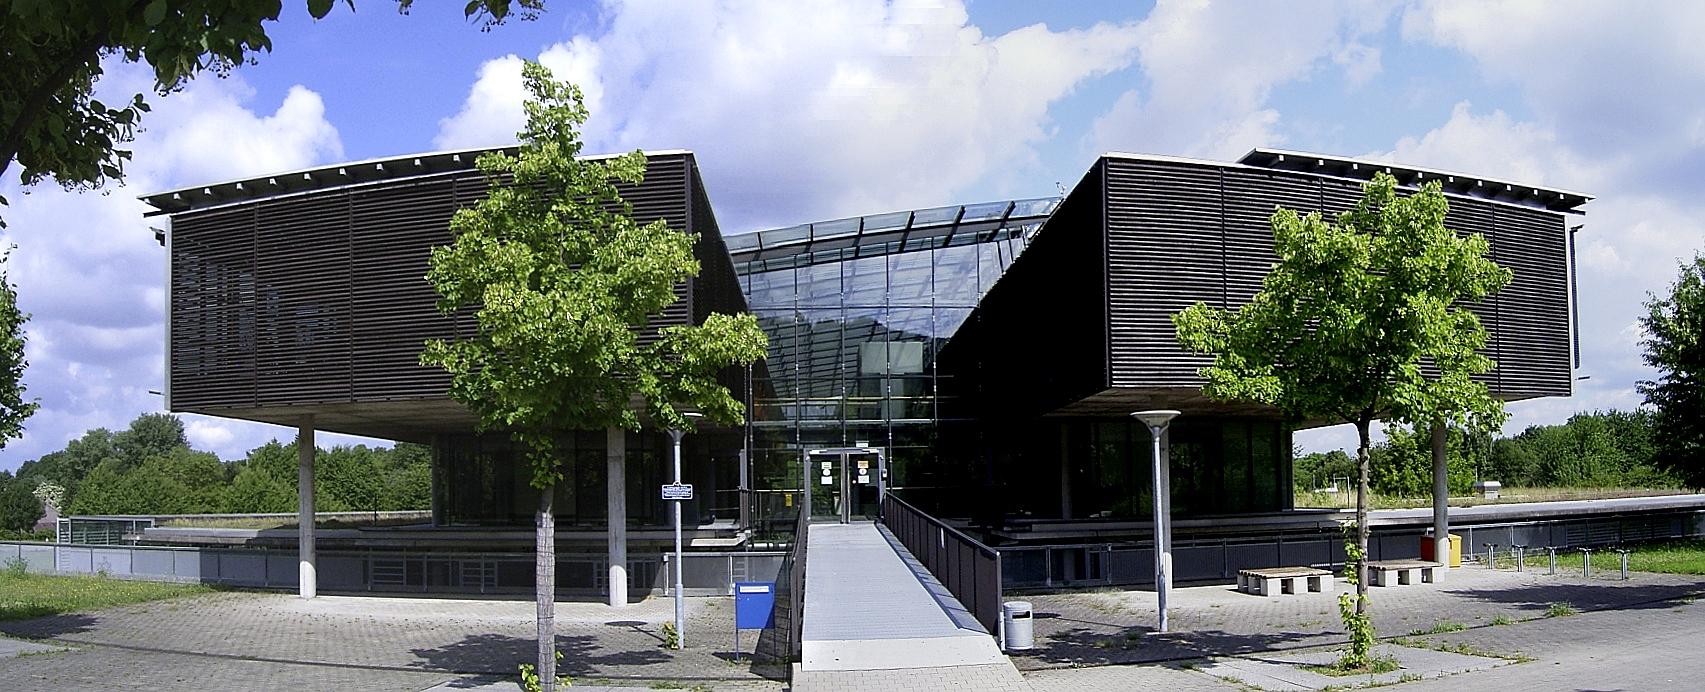 Karlsruhe, Gewerbeschule Durlach (Bild. Augenstein, CC BY SA 3.0, 2008)